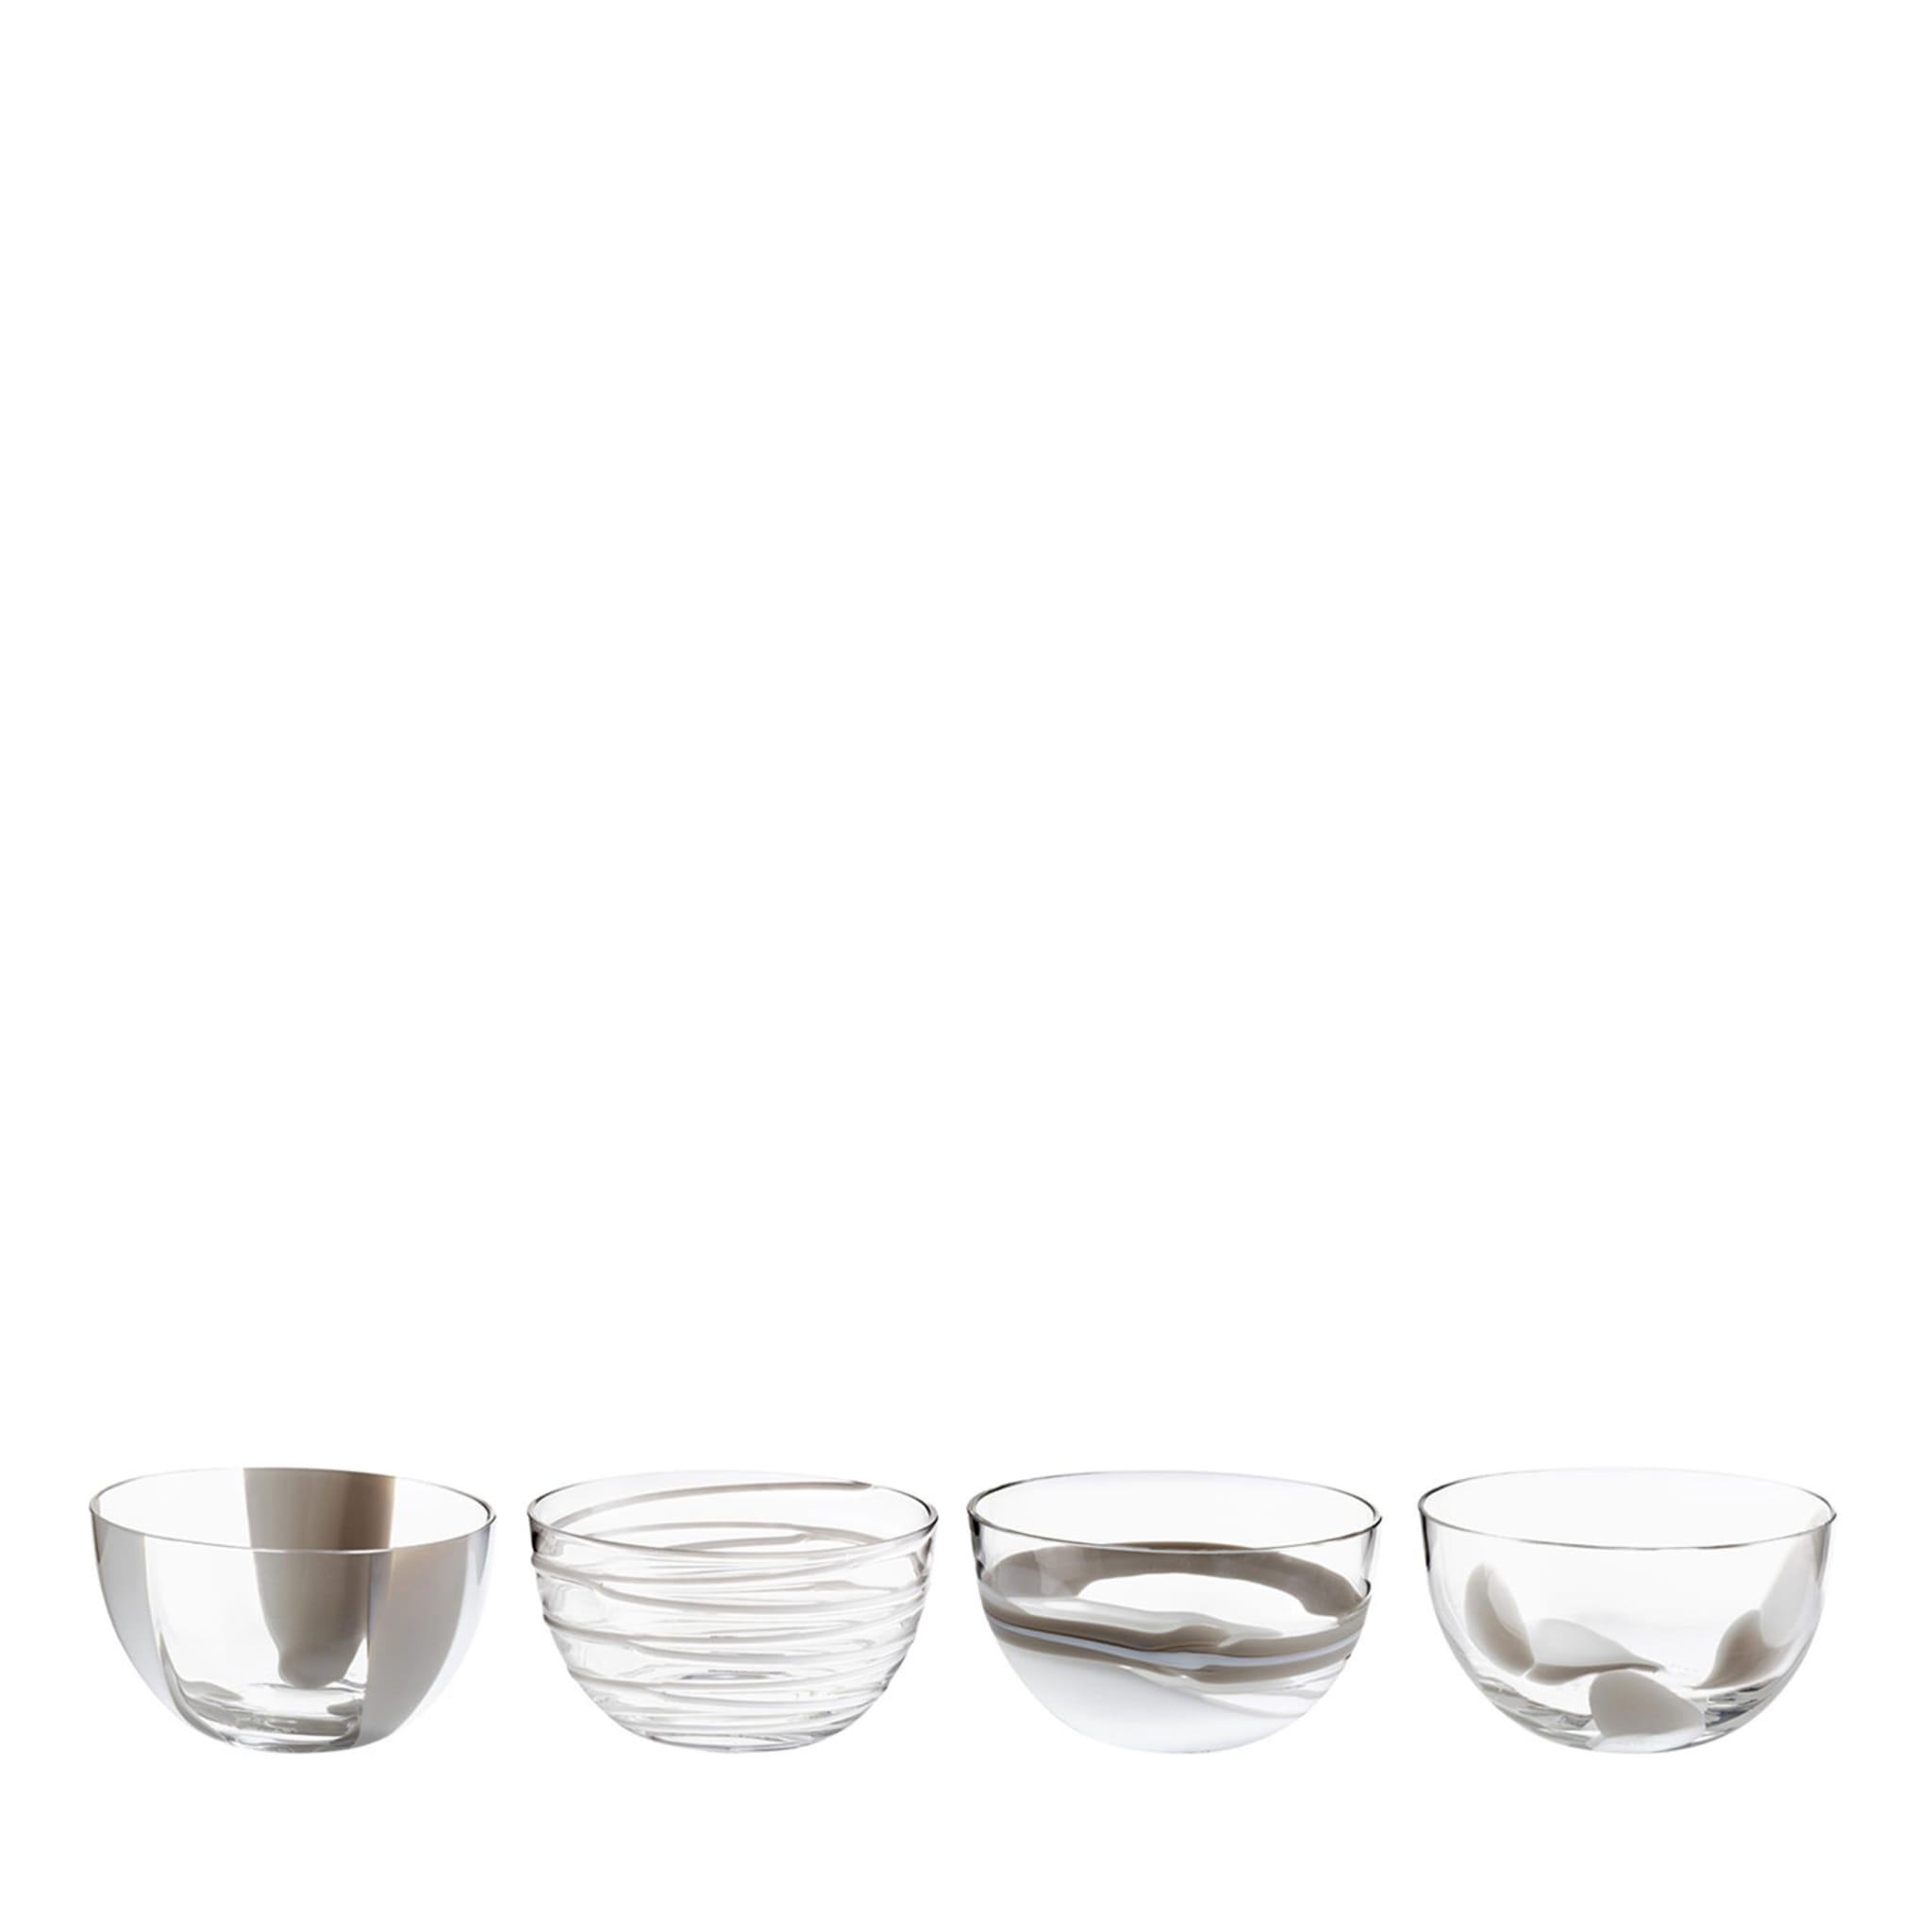 Le Diverse Set of 4 White Bowls  - Main view